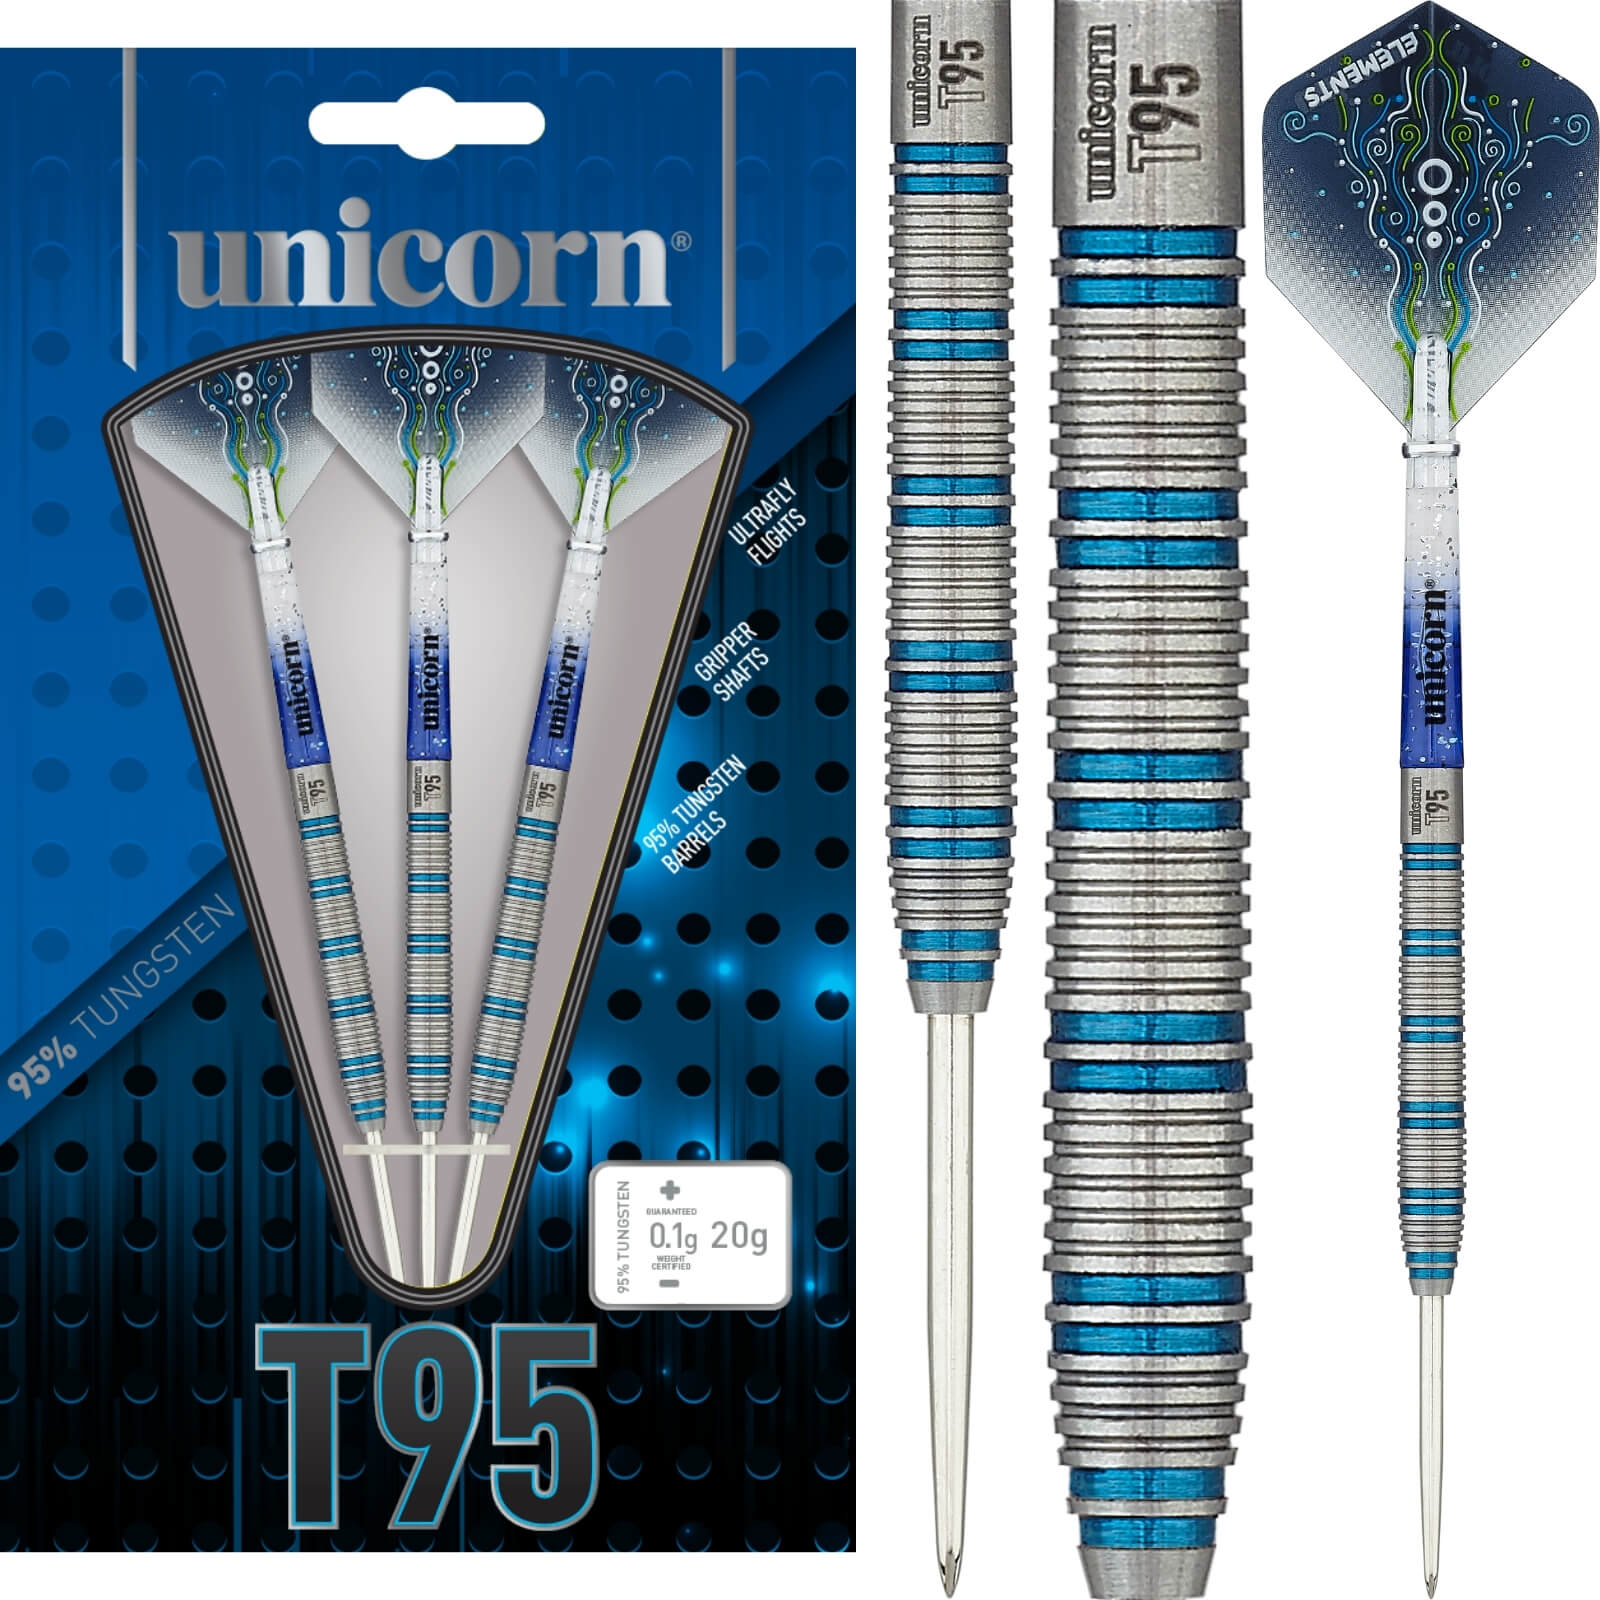 Darts - Unicorn - T95 Core XL Blue Type 1 Darts - Steel Tip - 95% Tungsten - 20g 22g 24g 